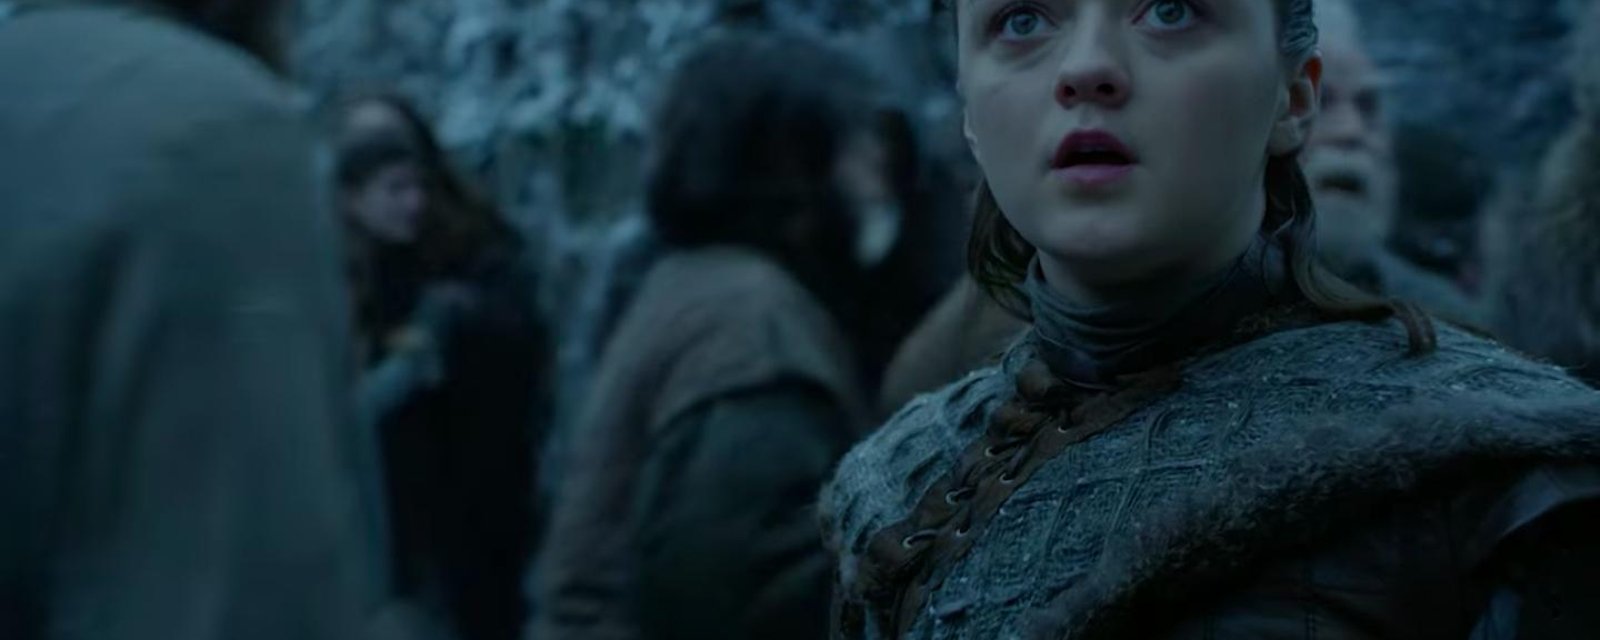 La bande-annonce de la nouvelle saison de Game of Thrones est sortie et on n'en peut plus d'attendre